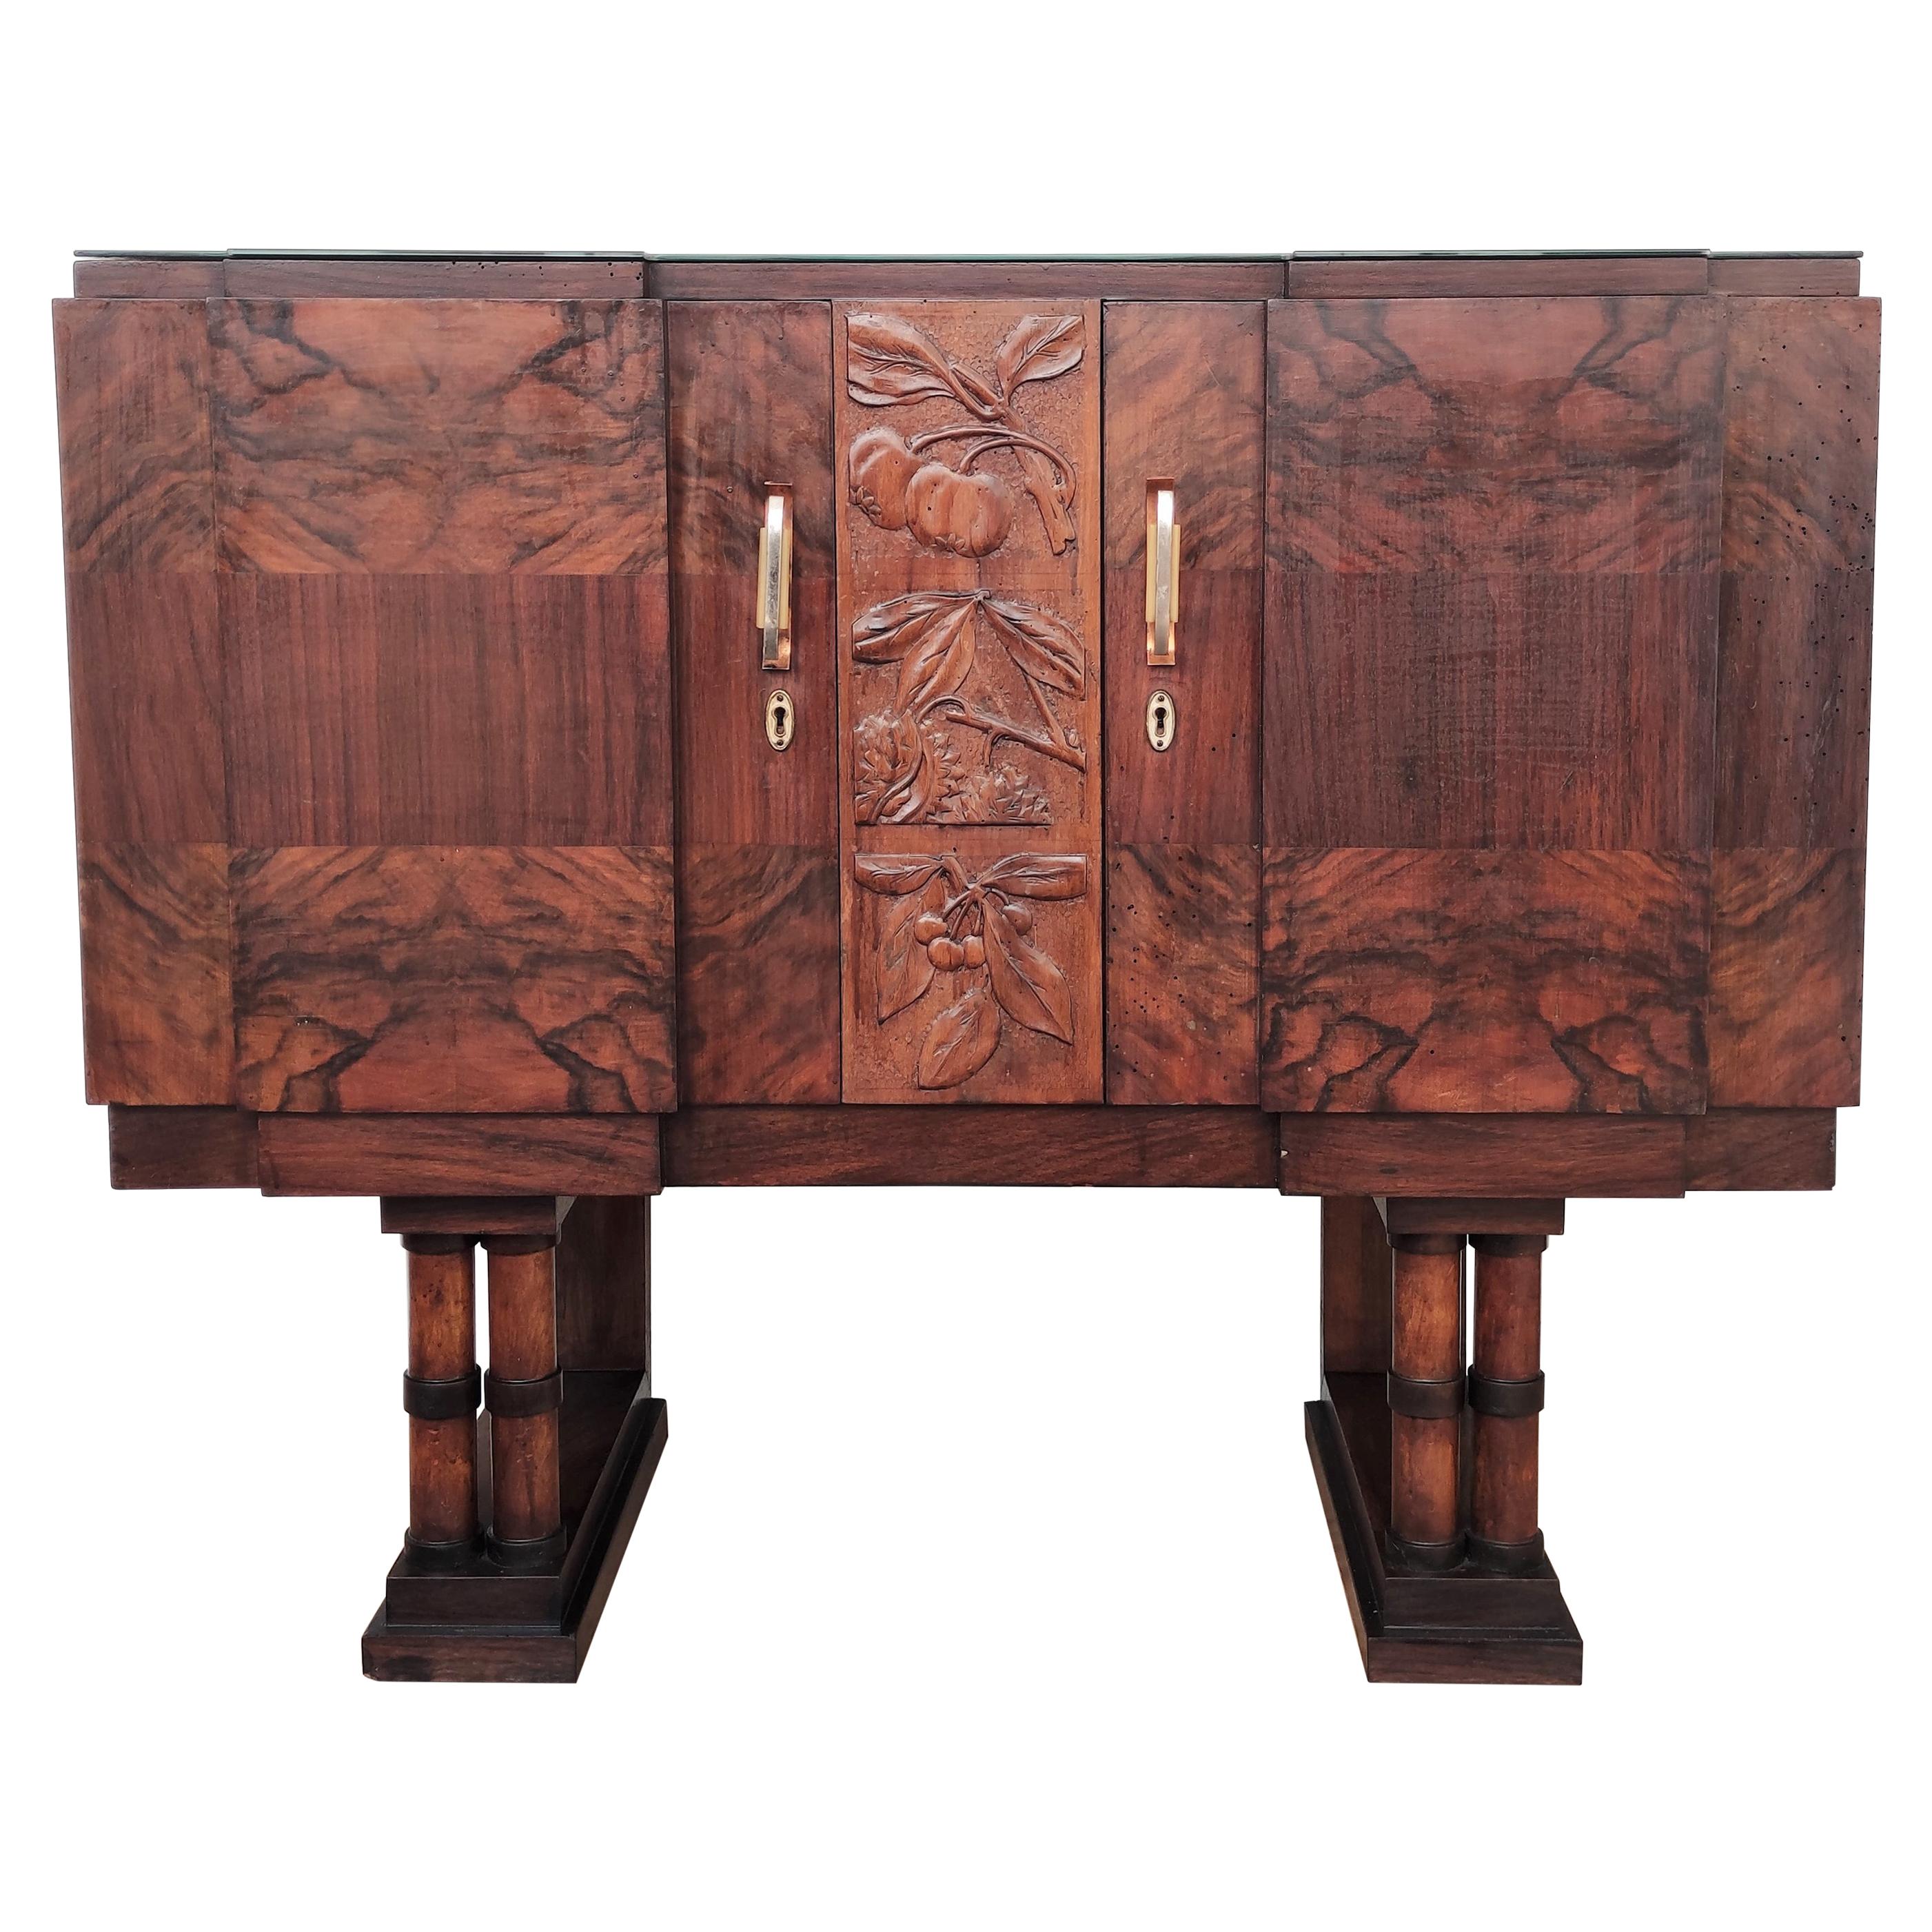 1930s Art Deco Midcentury Regency Italian Walnut Burl Sideboard Dry Bar Cabinet